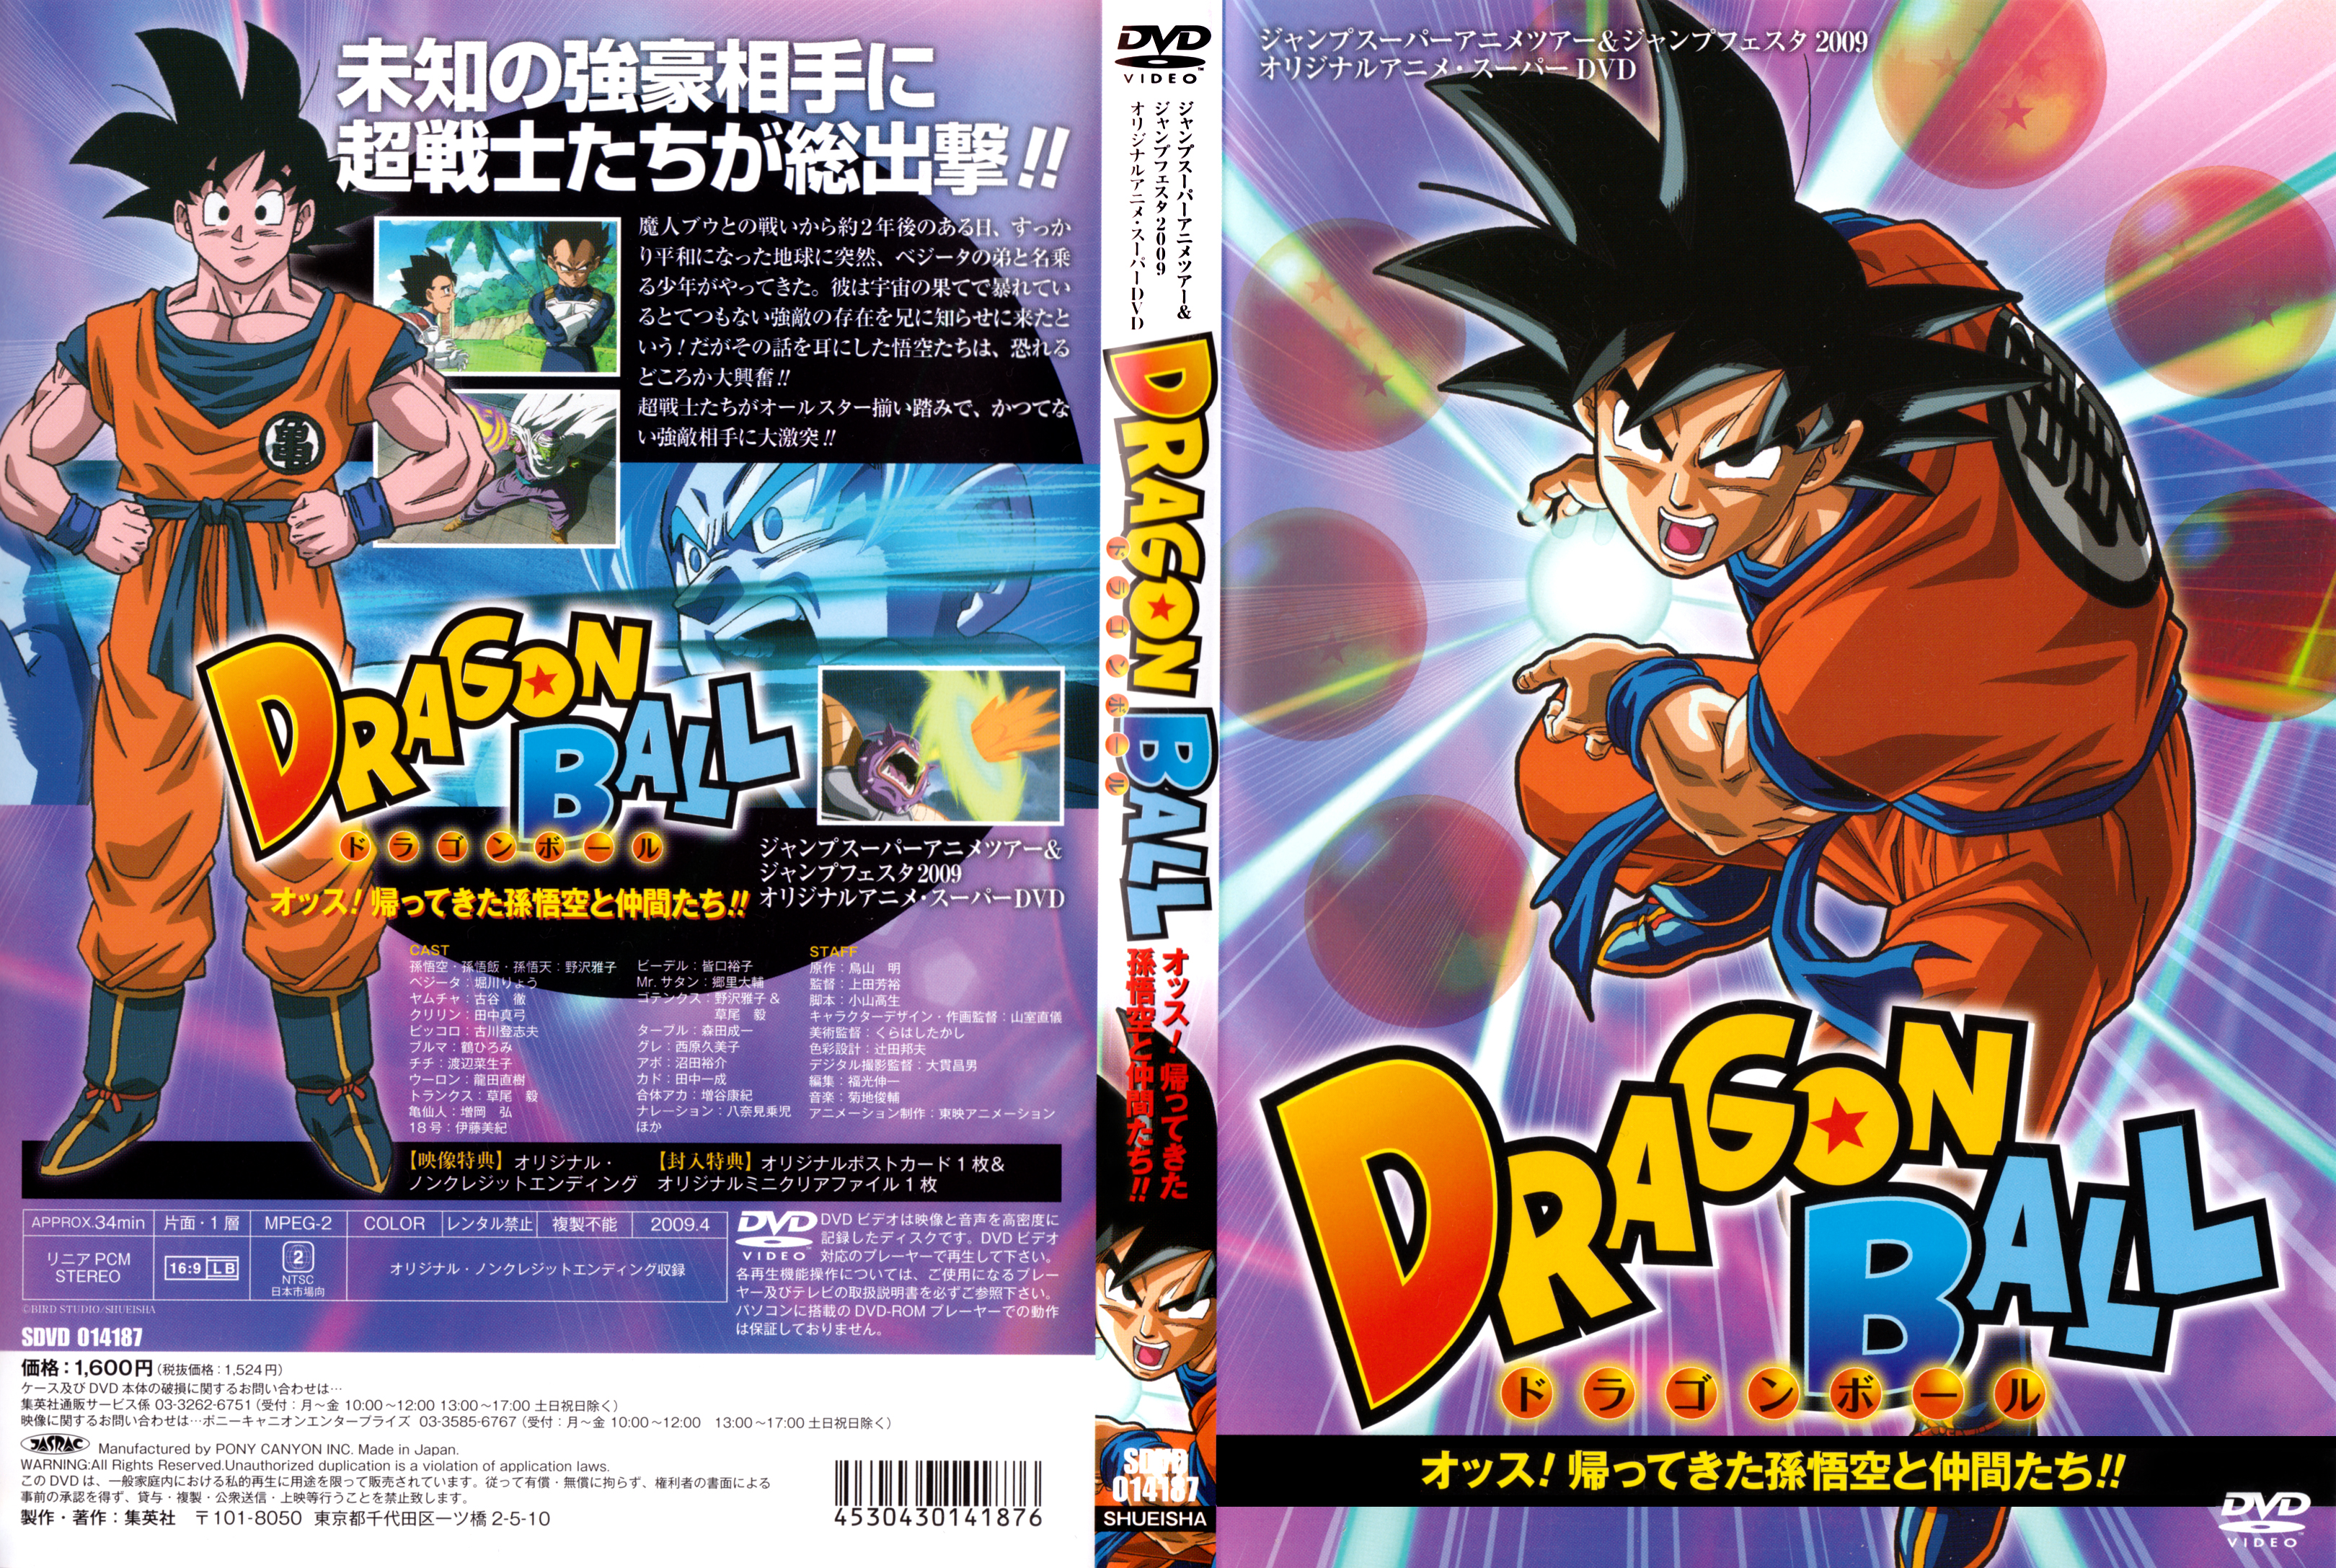 %C2%A1Hey!_Goku_y_sus_amigos_regresan - [DD] Dragon Ball Z Ova 3 Goku y Sus Amigos Regresan - Anime Ligero [Descargas]